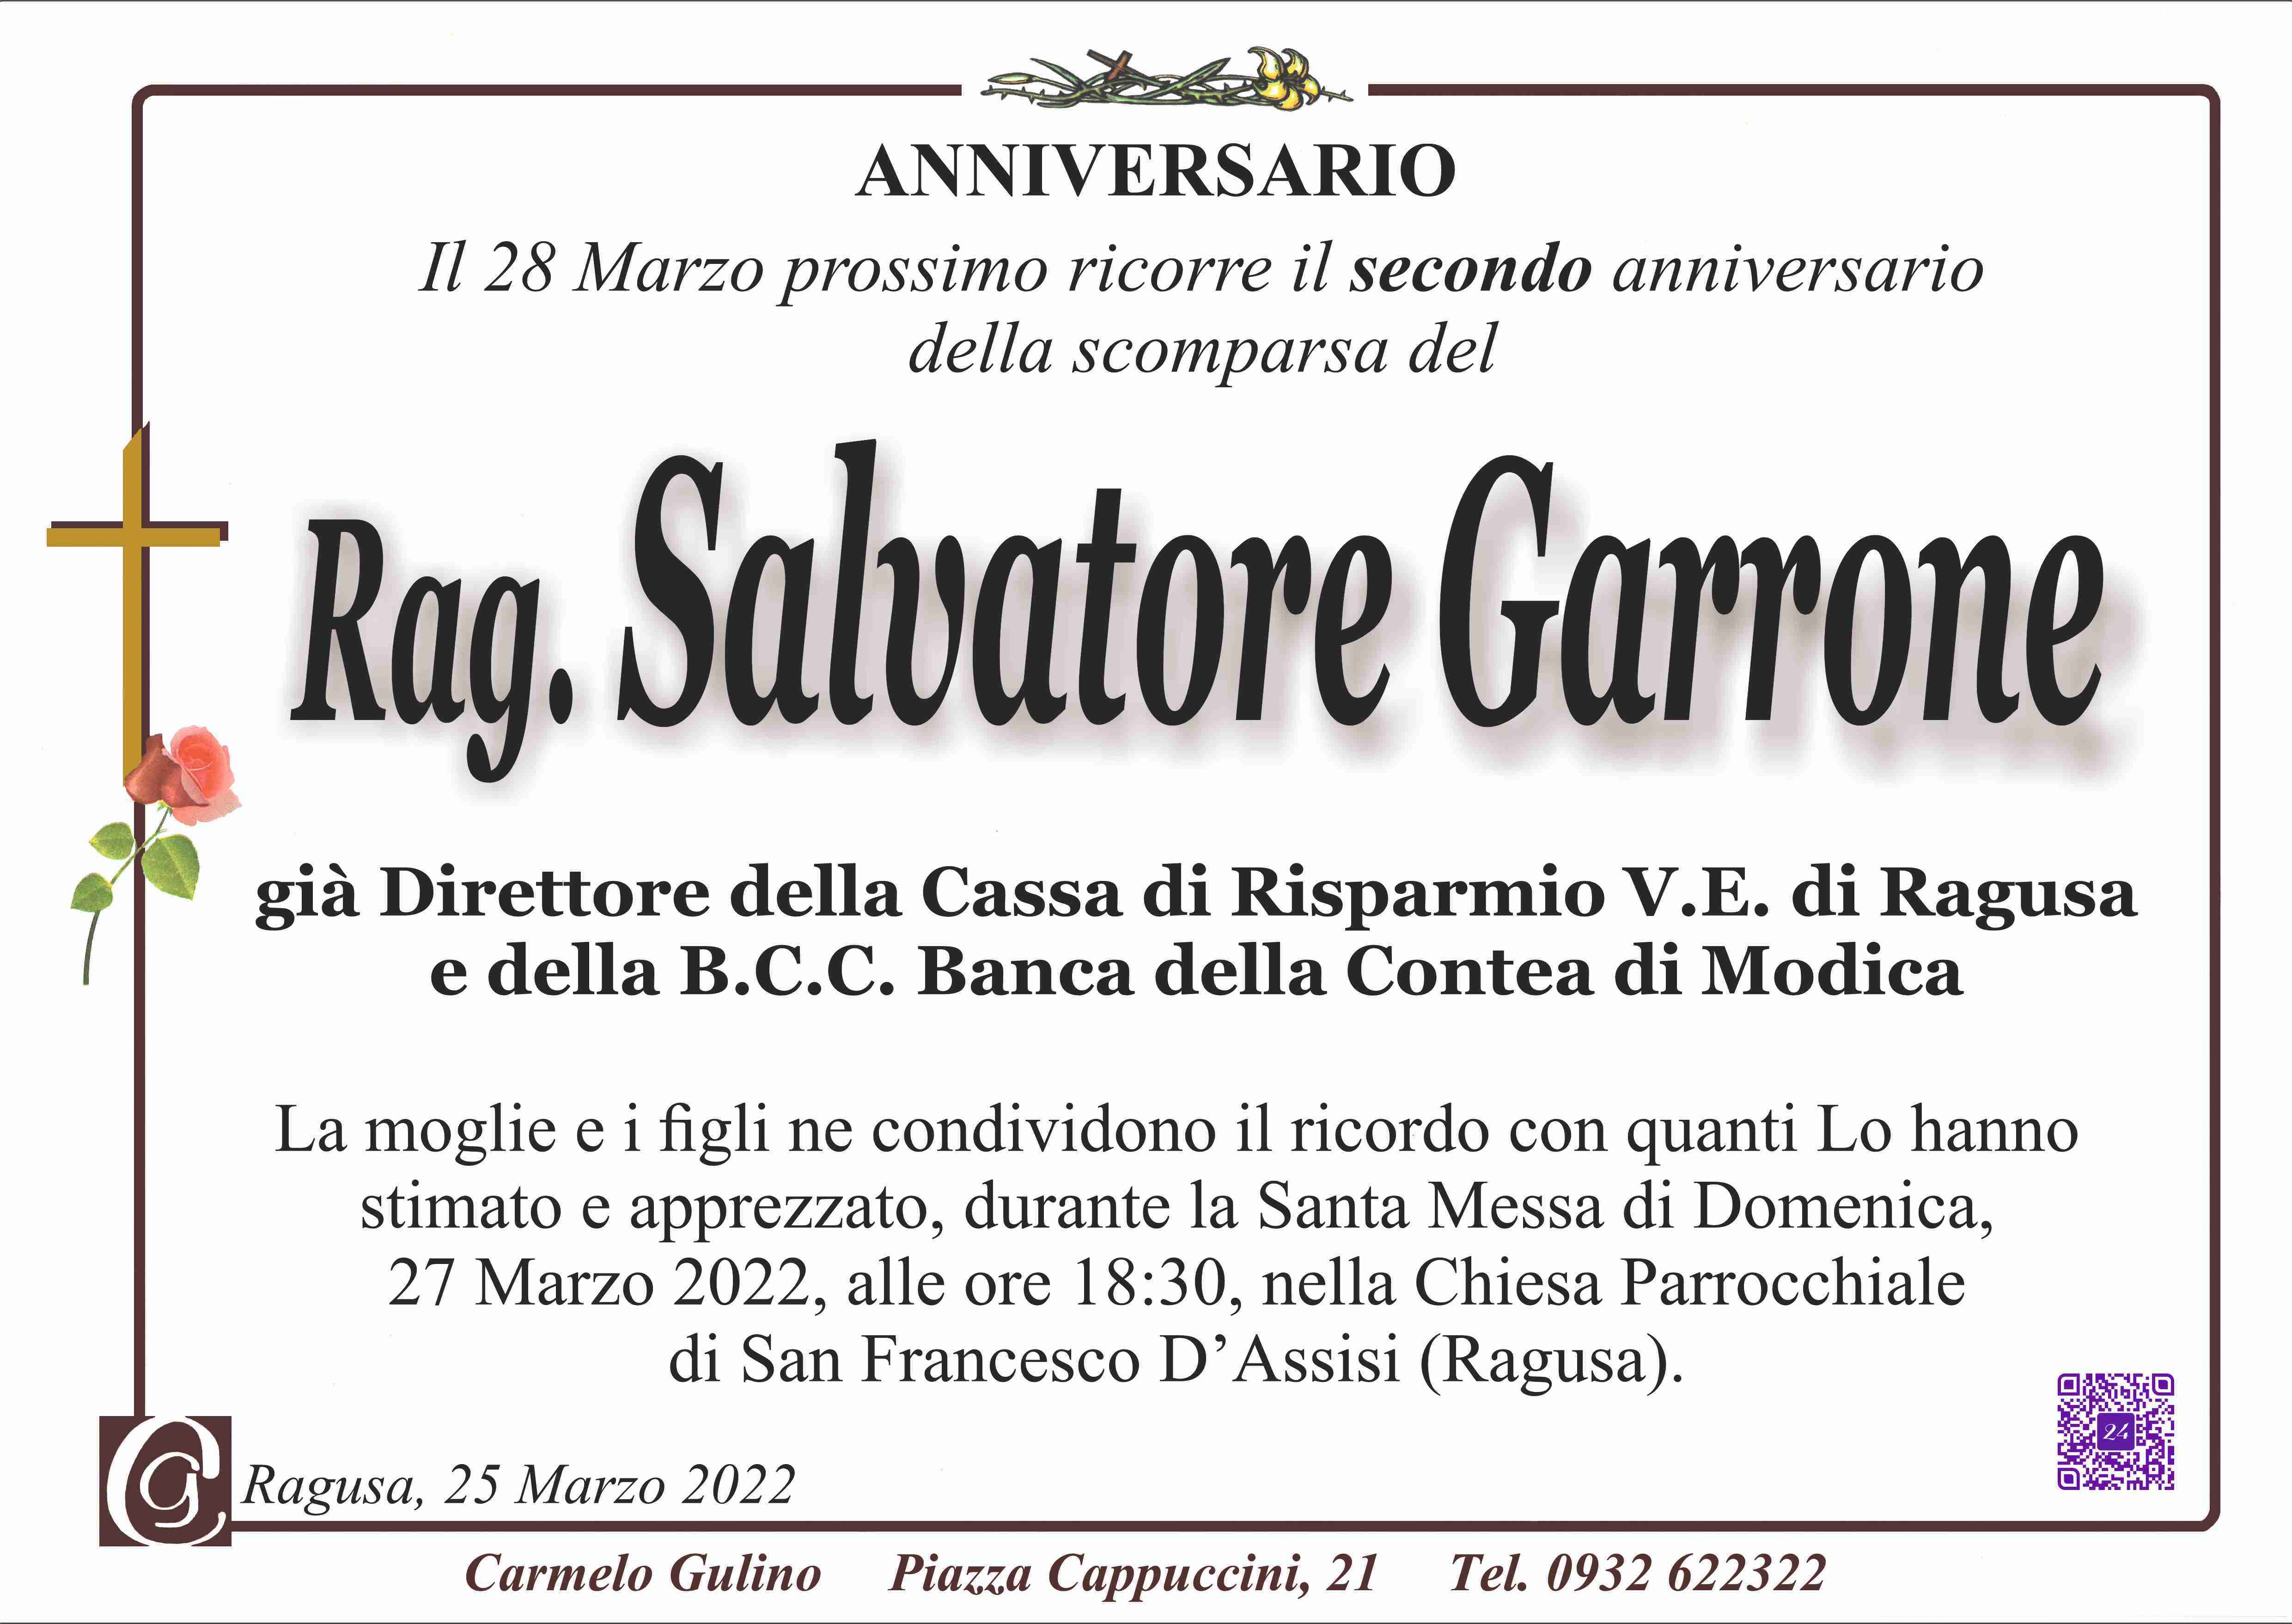 Salvatore Garrone